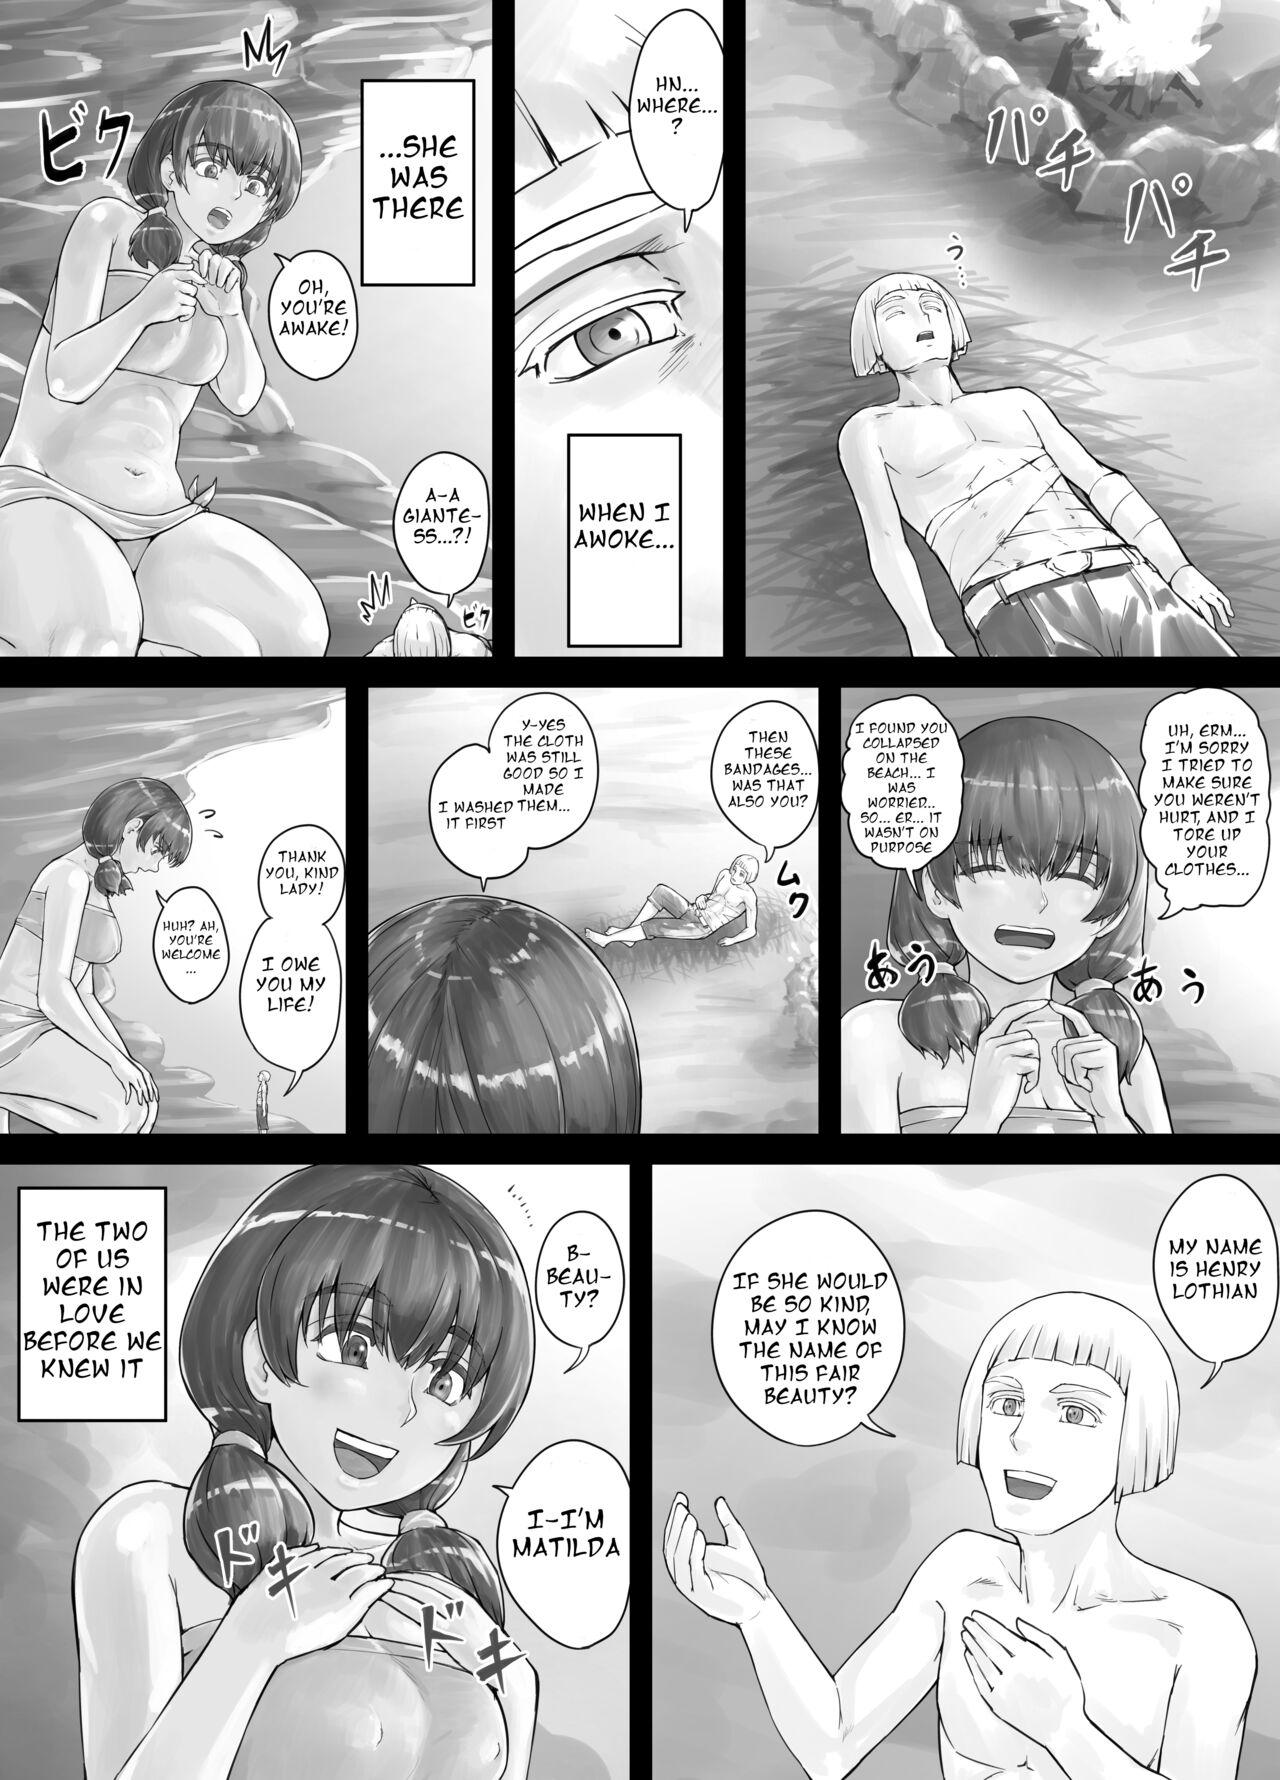 Oldman [DODOMESU3SEI] Kyojin Musume-chan Manga Ch. 1-5 [English] - Original Spy Camera - Page 4